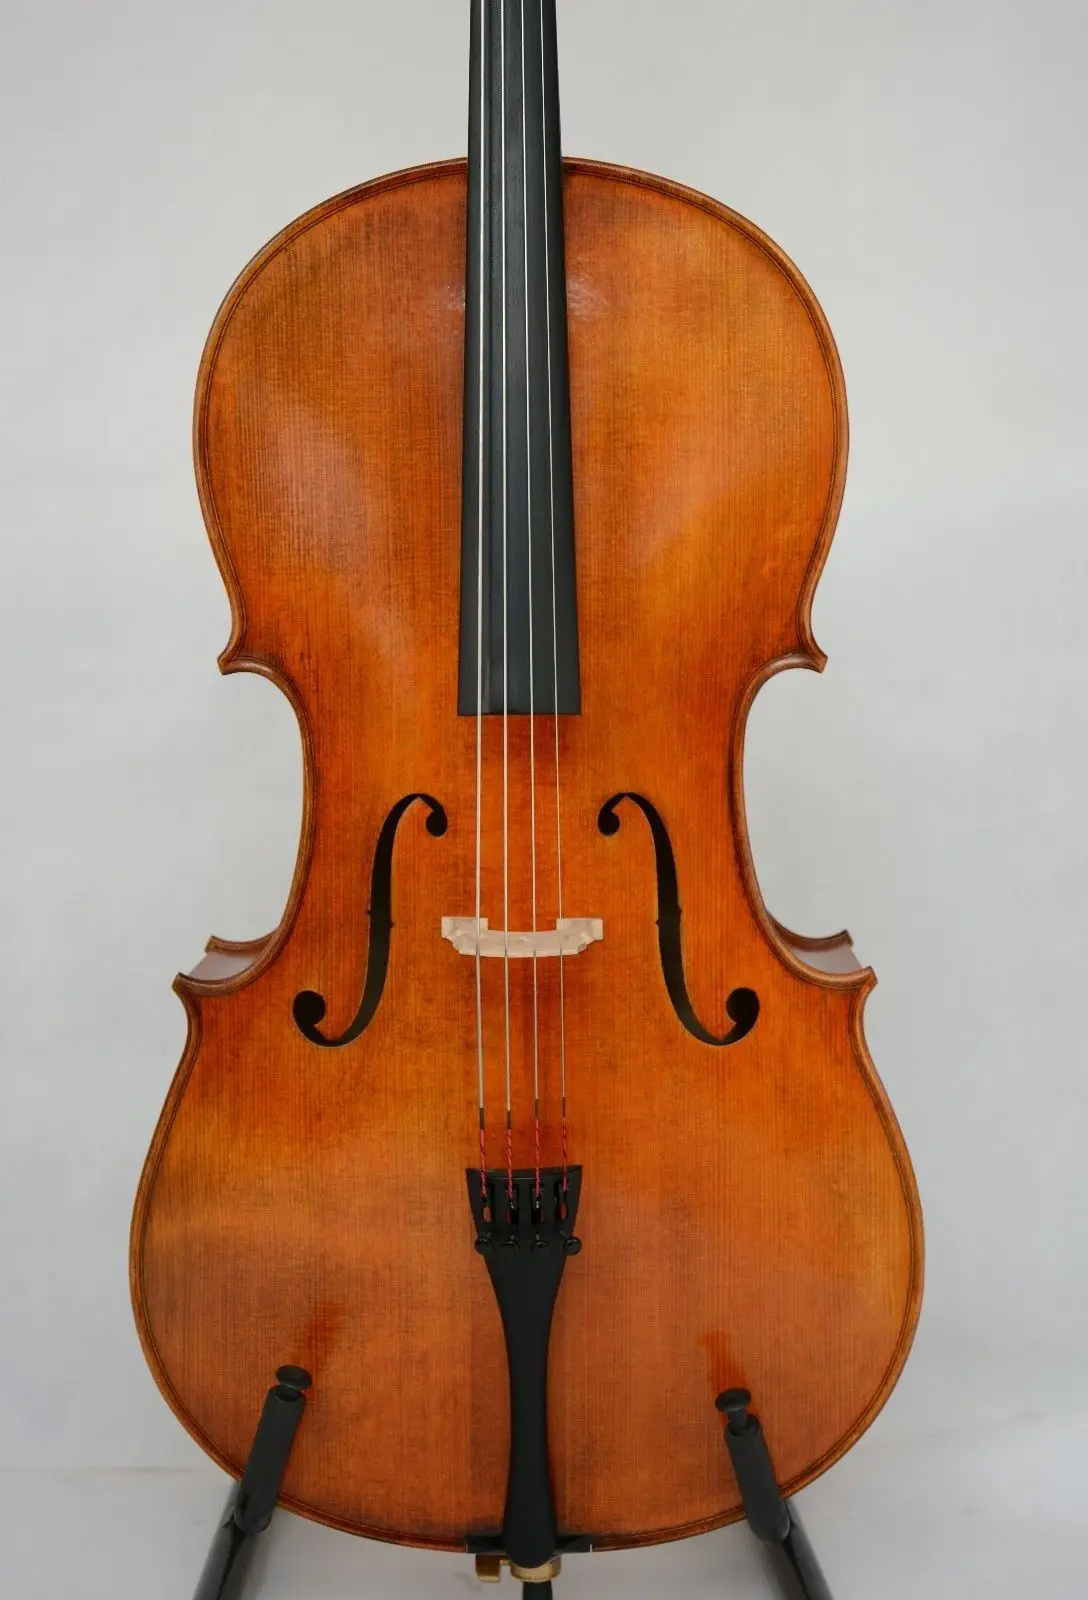 Stradivari 1/2 Виолончель копировально красивый тон! Античный масляный лак широкое пламя назад